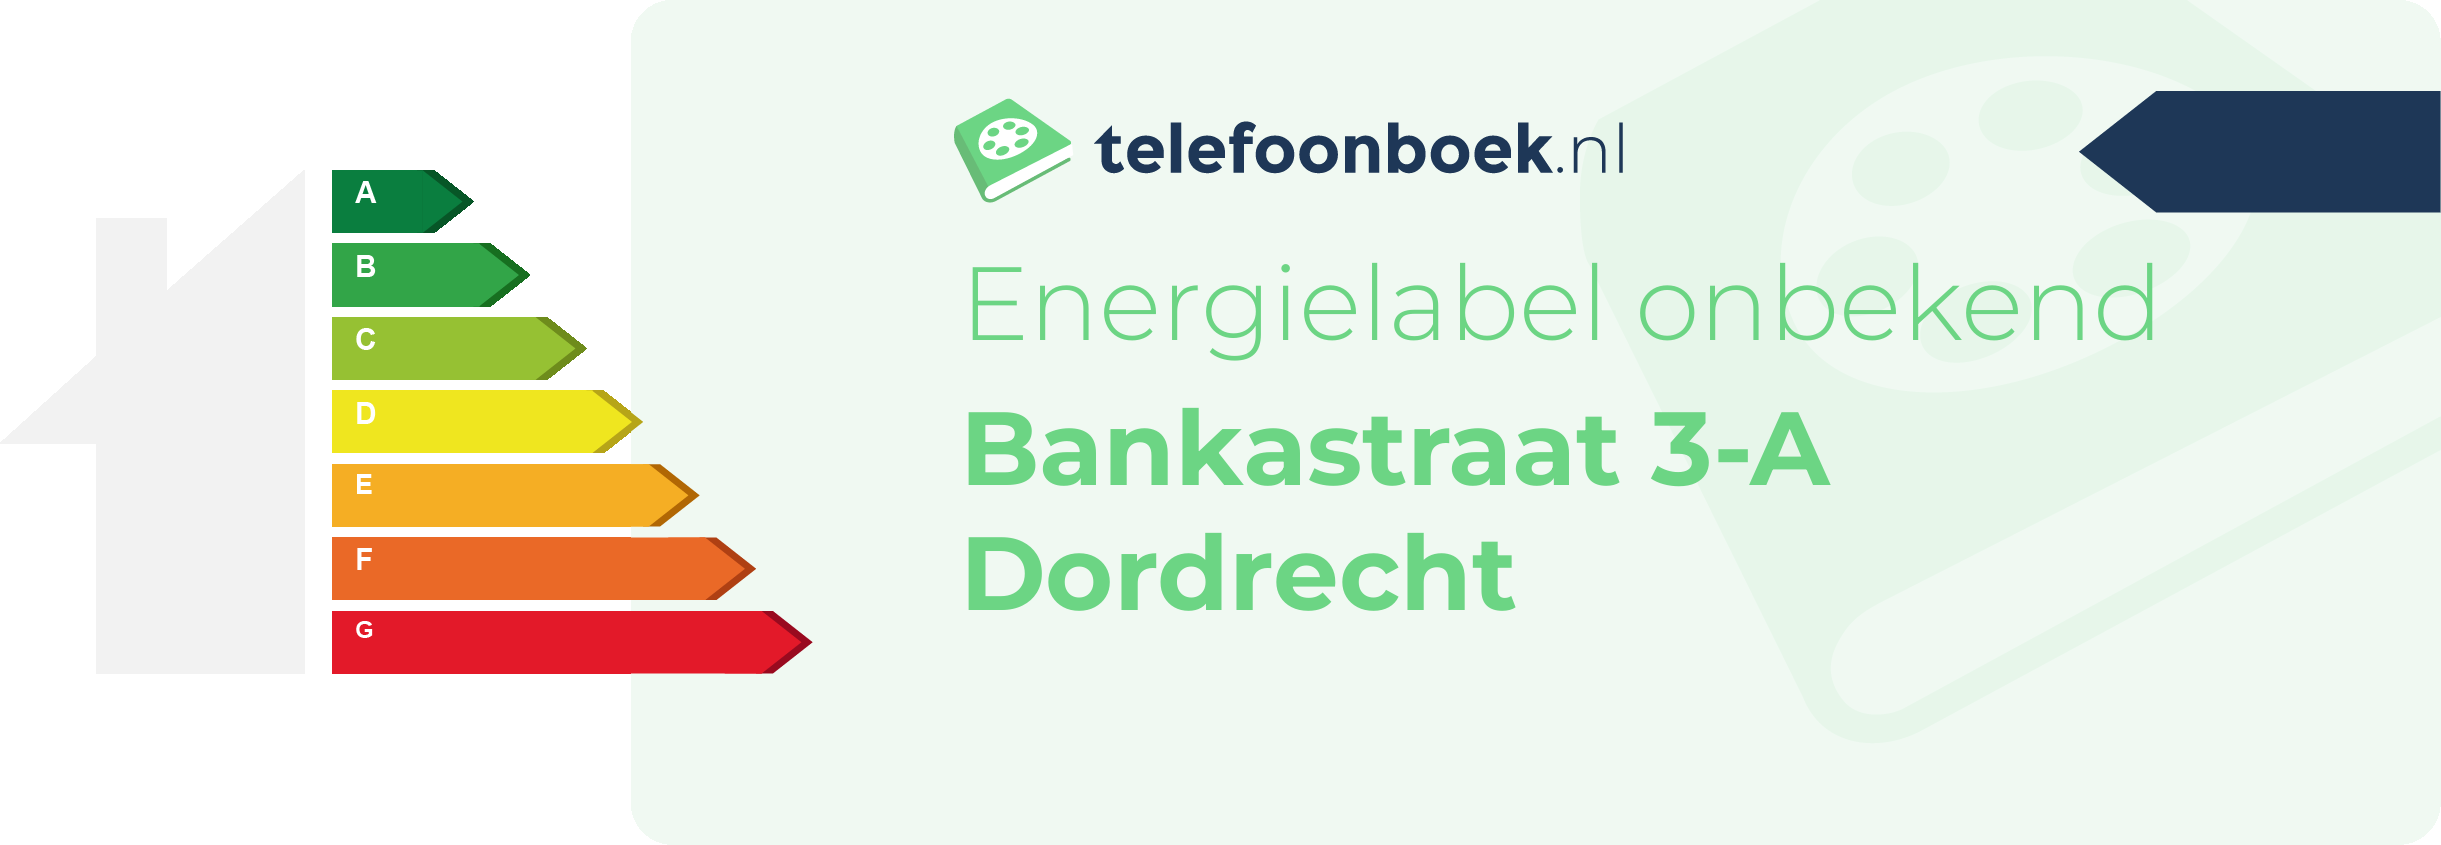 Energielabel Bankastraat 3-A Dordrecht